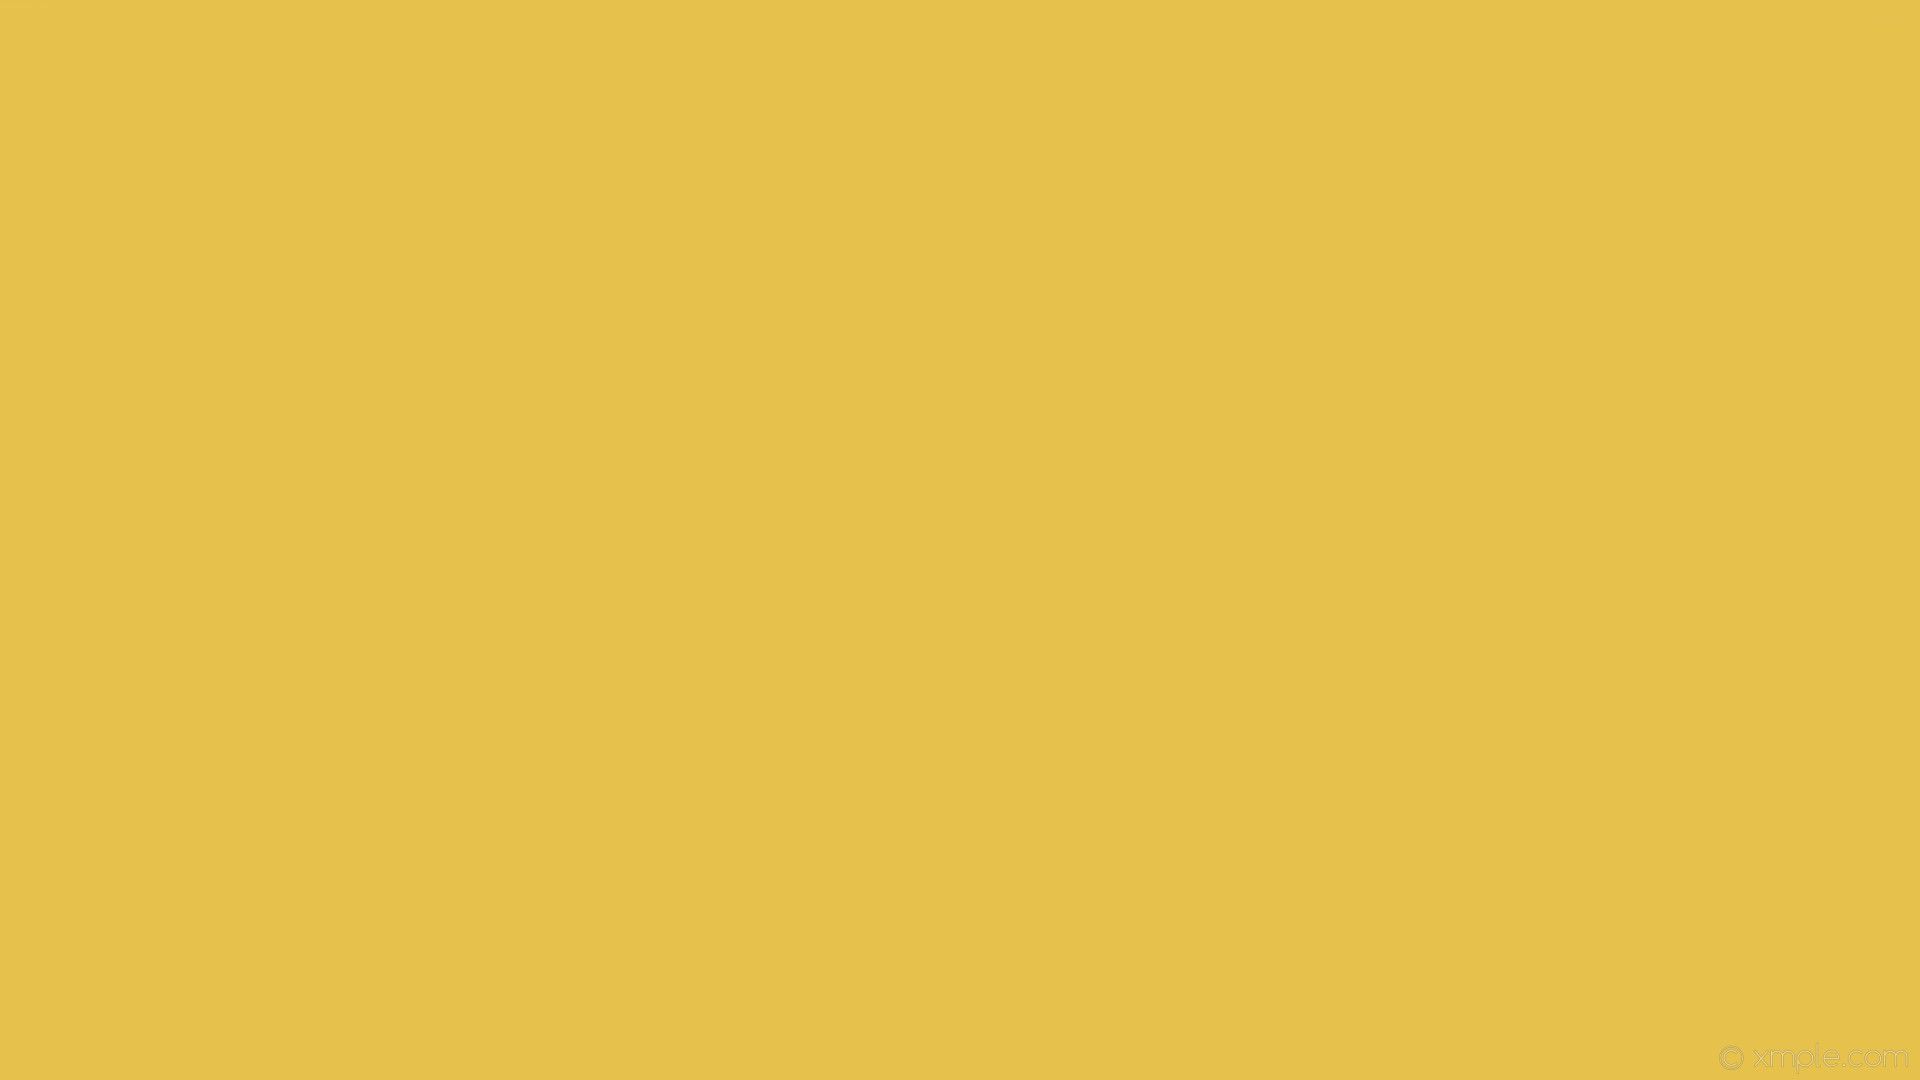 Fondos de pantalla amarillos estéticos Full Hd - Vector fondo amarillo liso